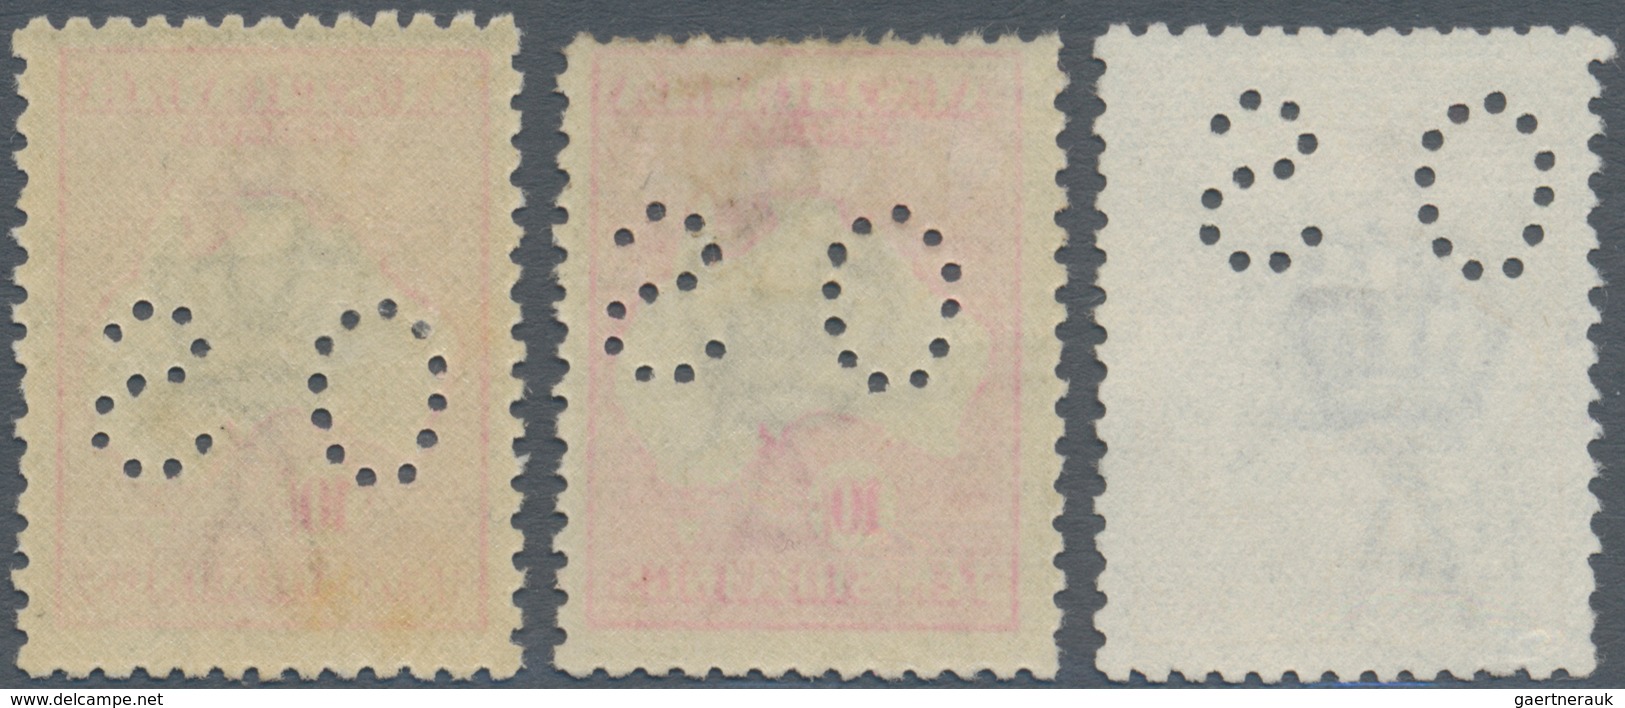 Australien - Dienstmarken Mit OS-Lochung: 1918, Kangaroos 3rd Wmk. 5s. Grey And Yellow And 10s. Grey - Dienstzegels